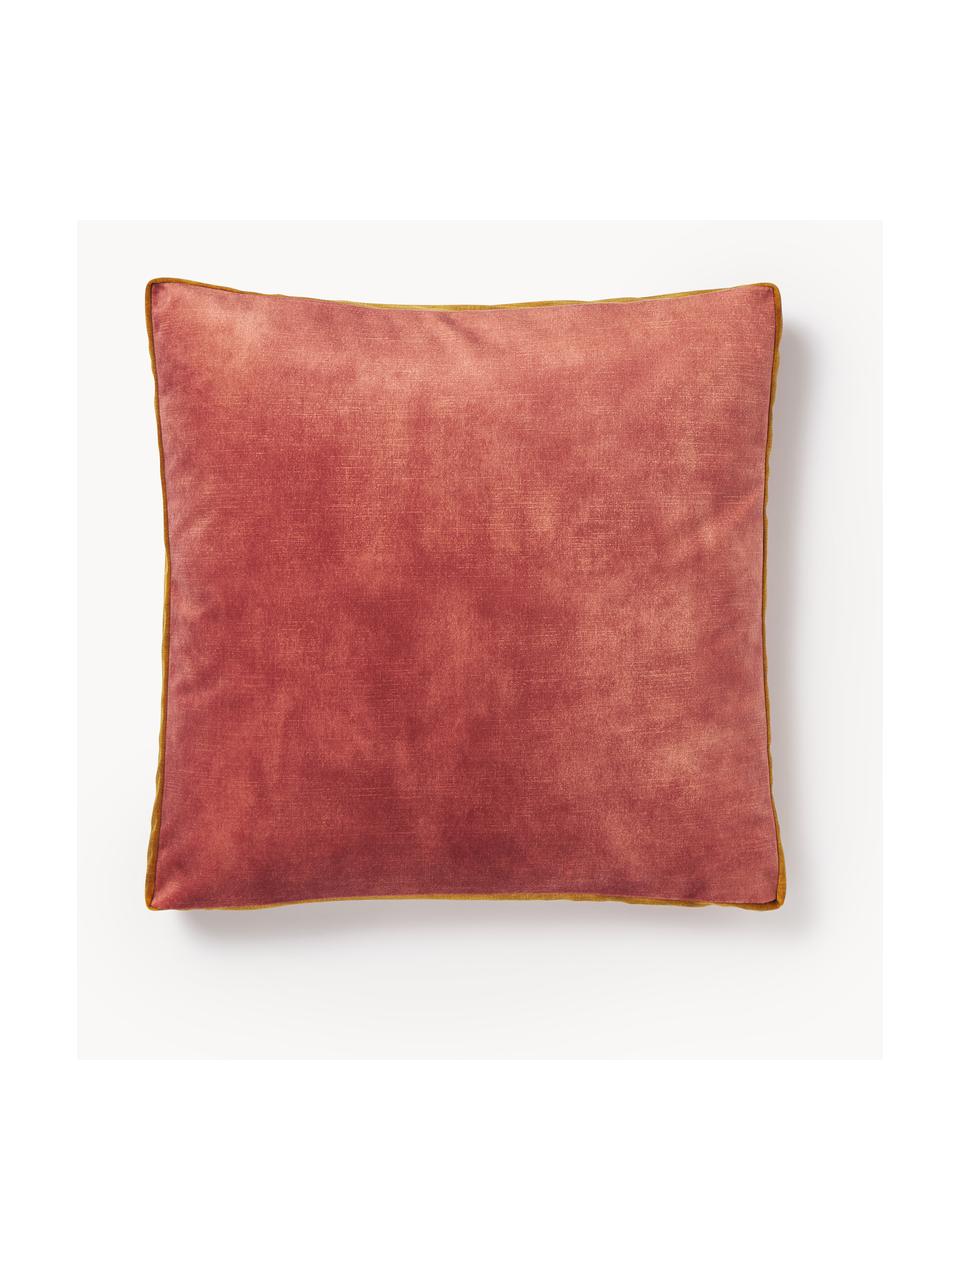 Cuscino in velluto con bordino Tia, Rivestimento: 100% poliestere (velluto), Velluto rosso corallo, Larg. 40 x Lung. 40 cm